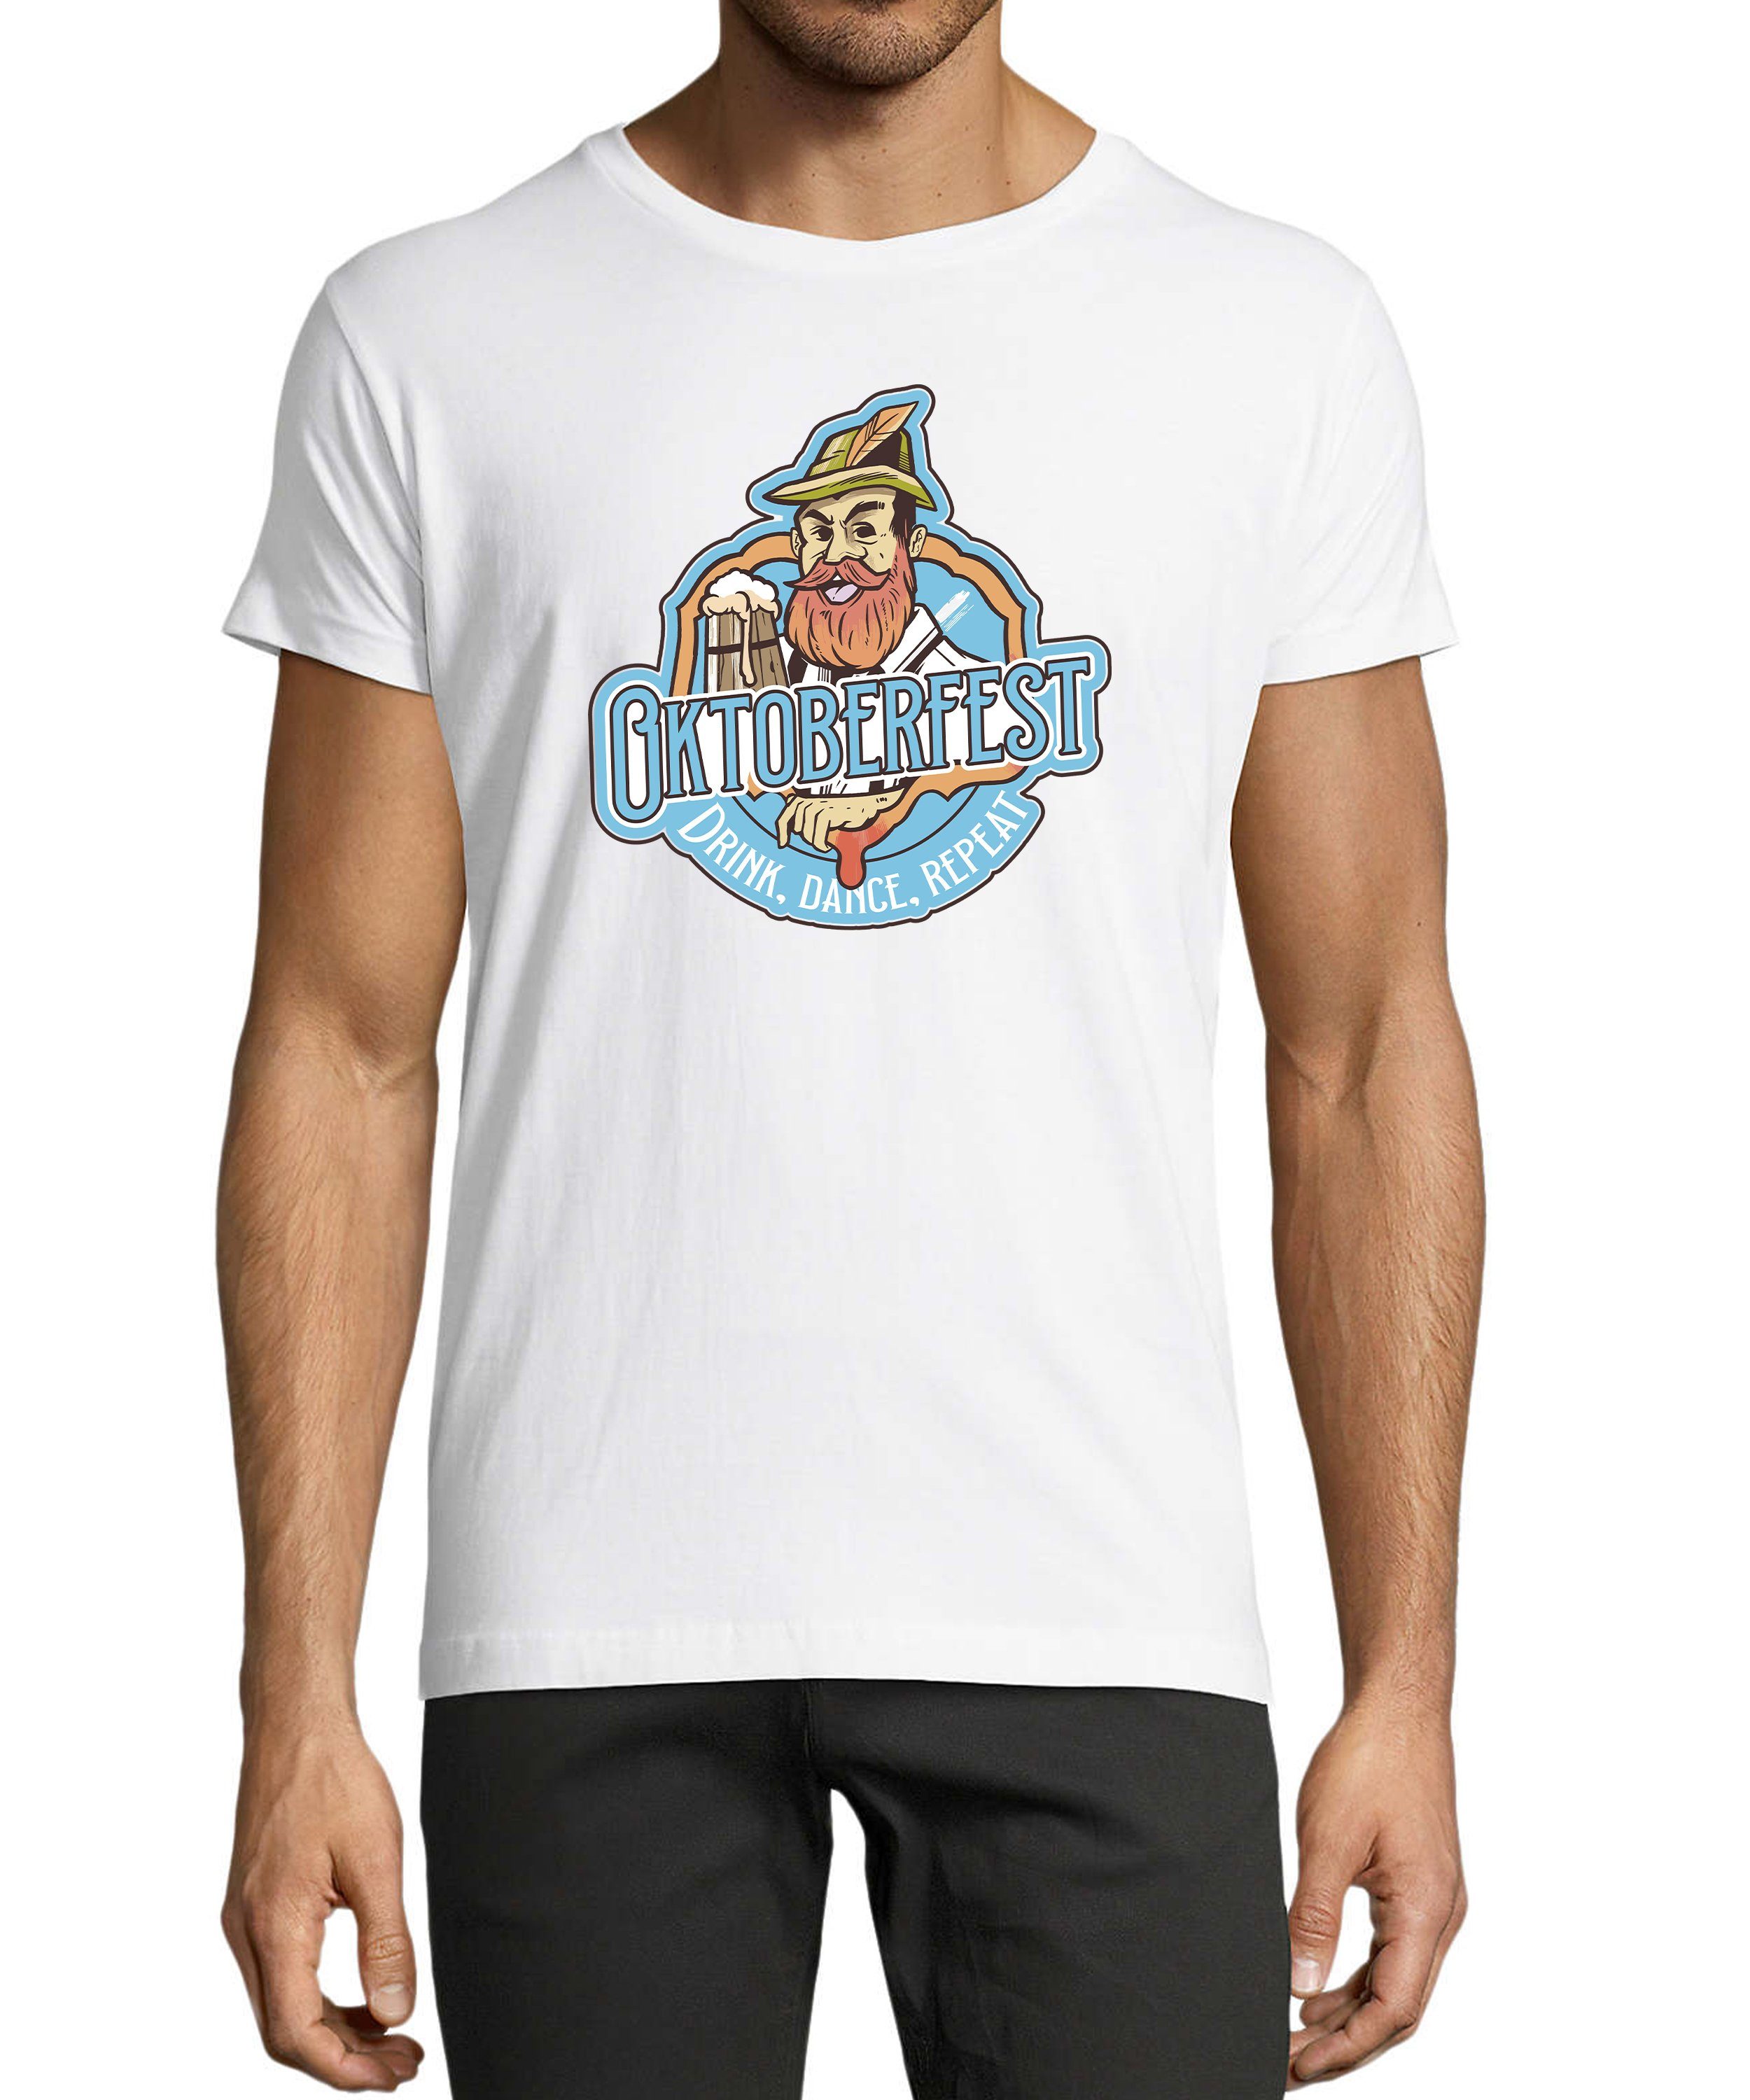 Herren weiss Shirt Aufdruck Baumwollshirt Oktoberfest mit T-Shirt T-Shirt MyDesign24 Print - i318 Fun Trinkshirt Regular Fit,